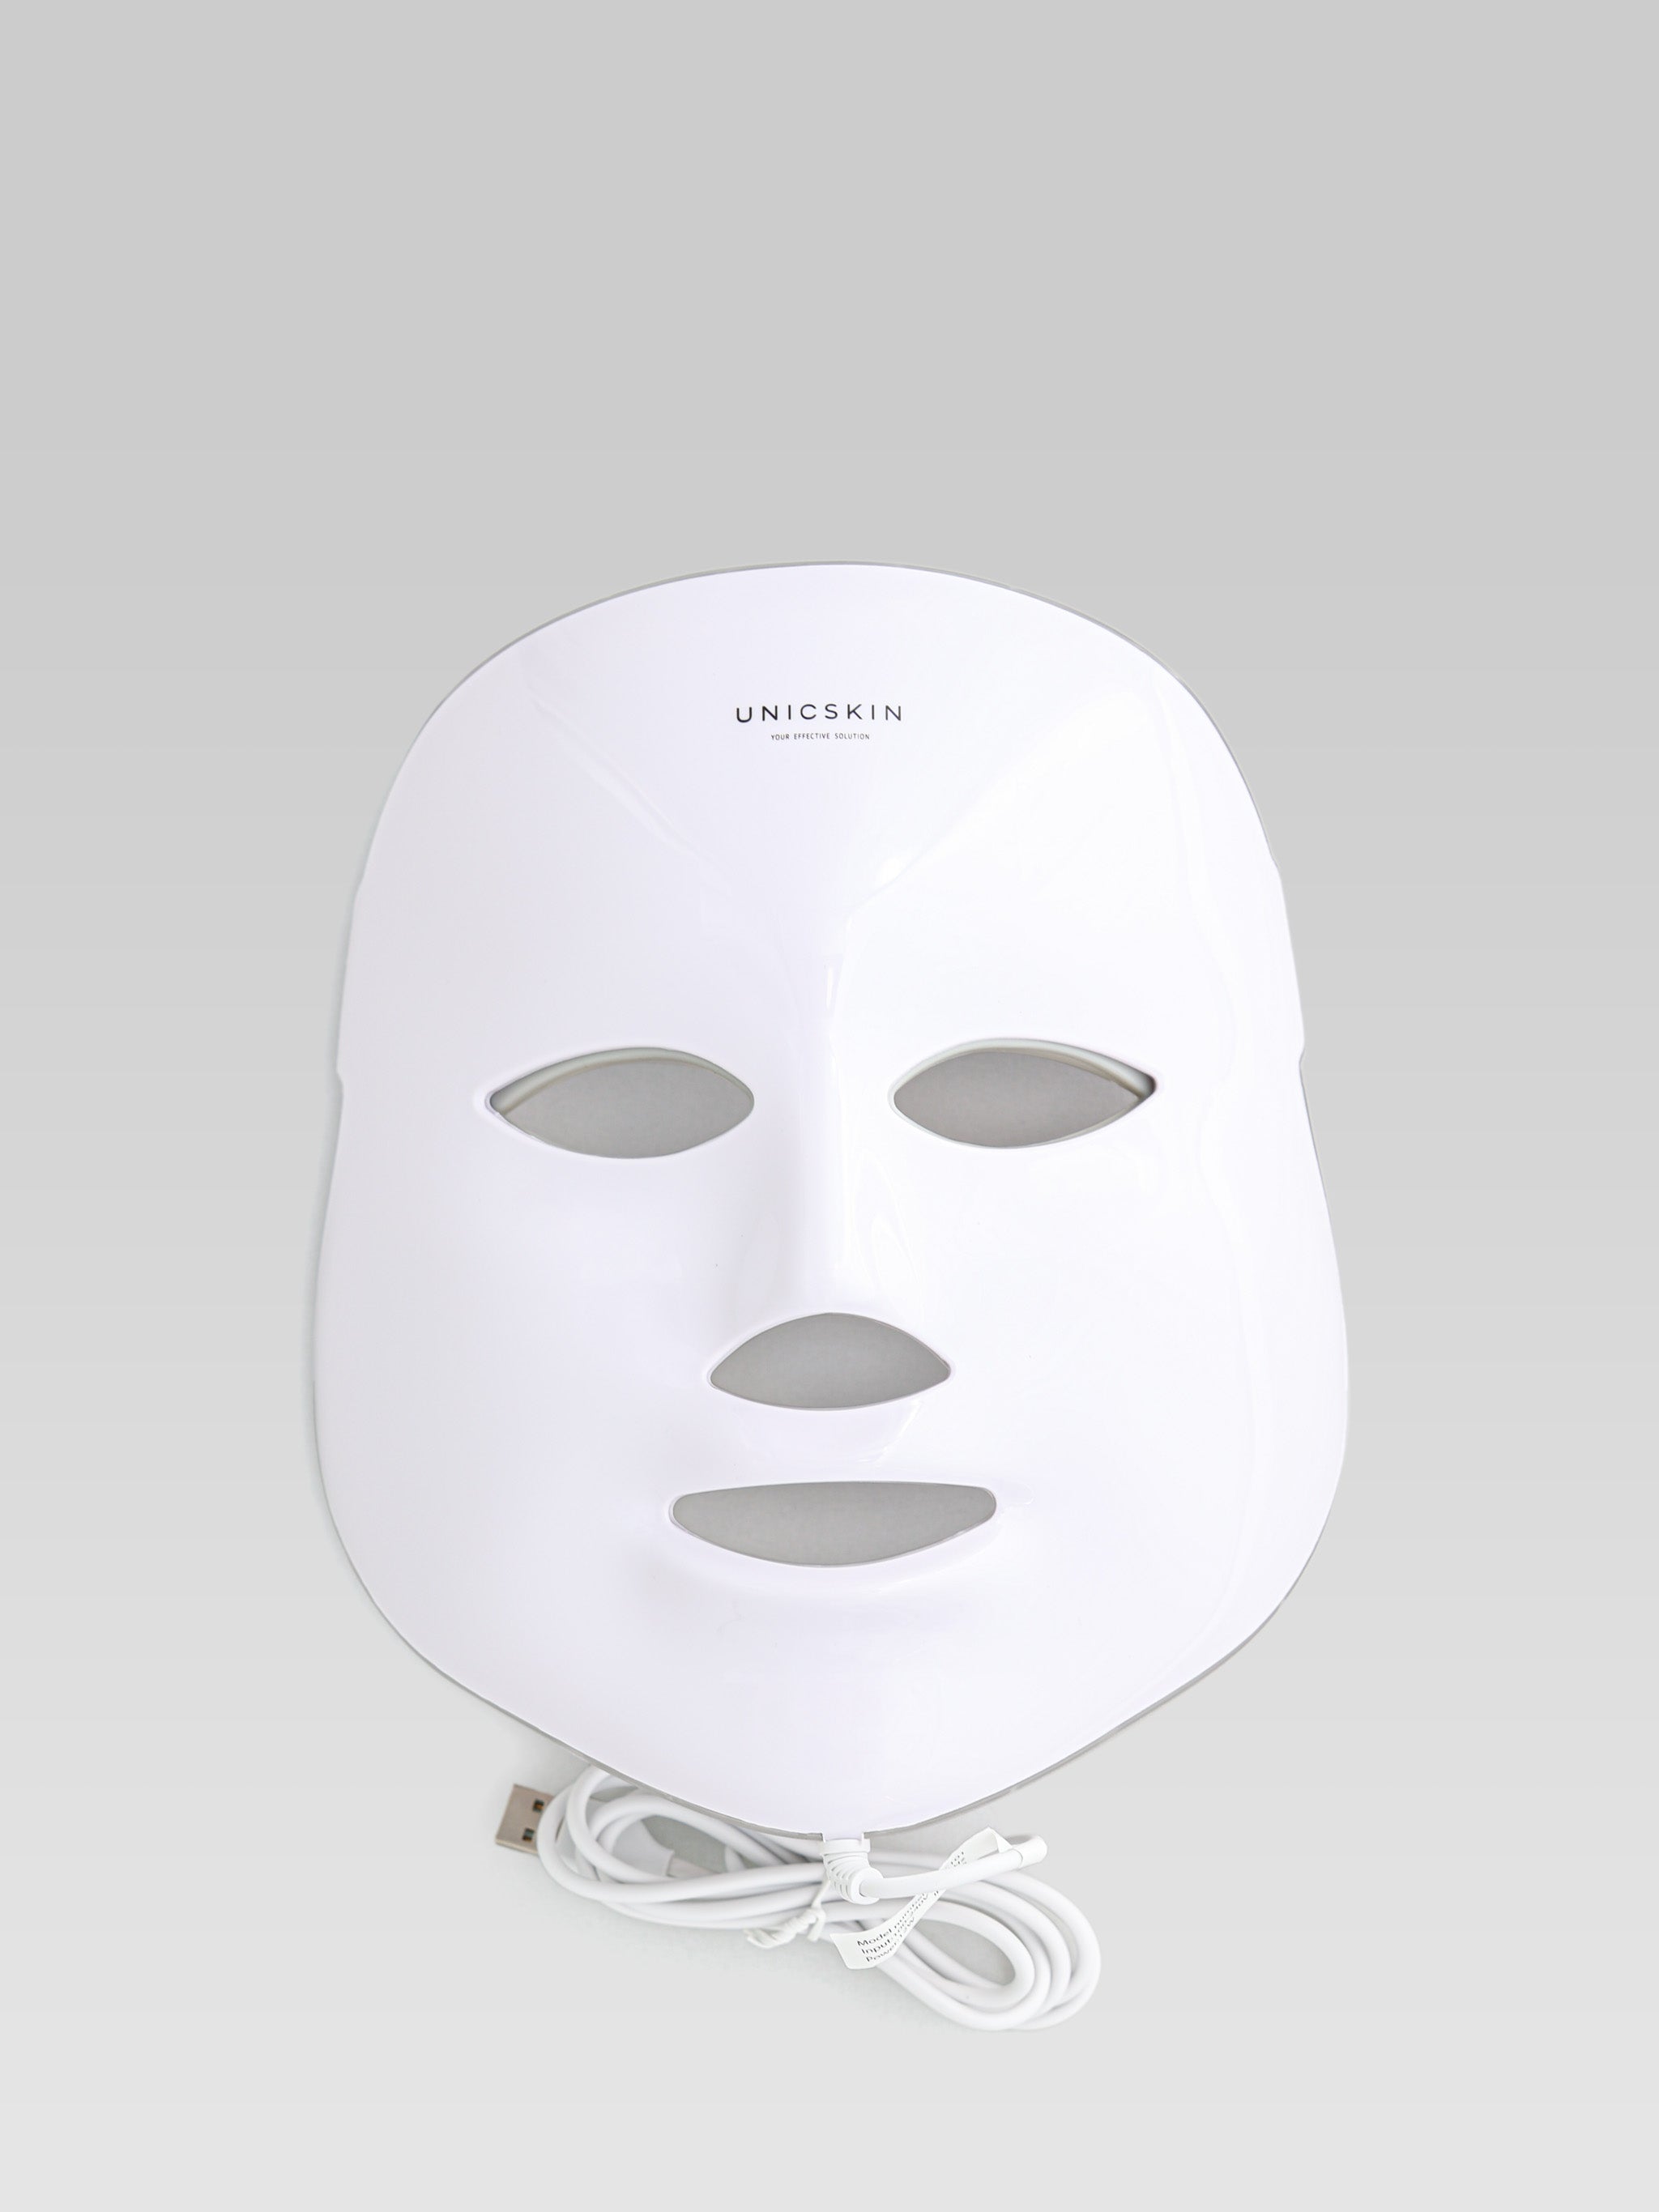 UNICSKIN UNICLED Korean Mask Beauty LED Technology product shot